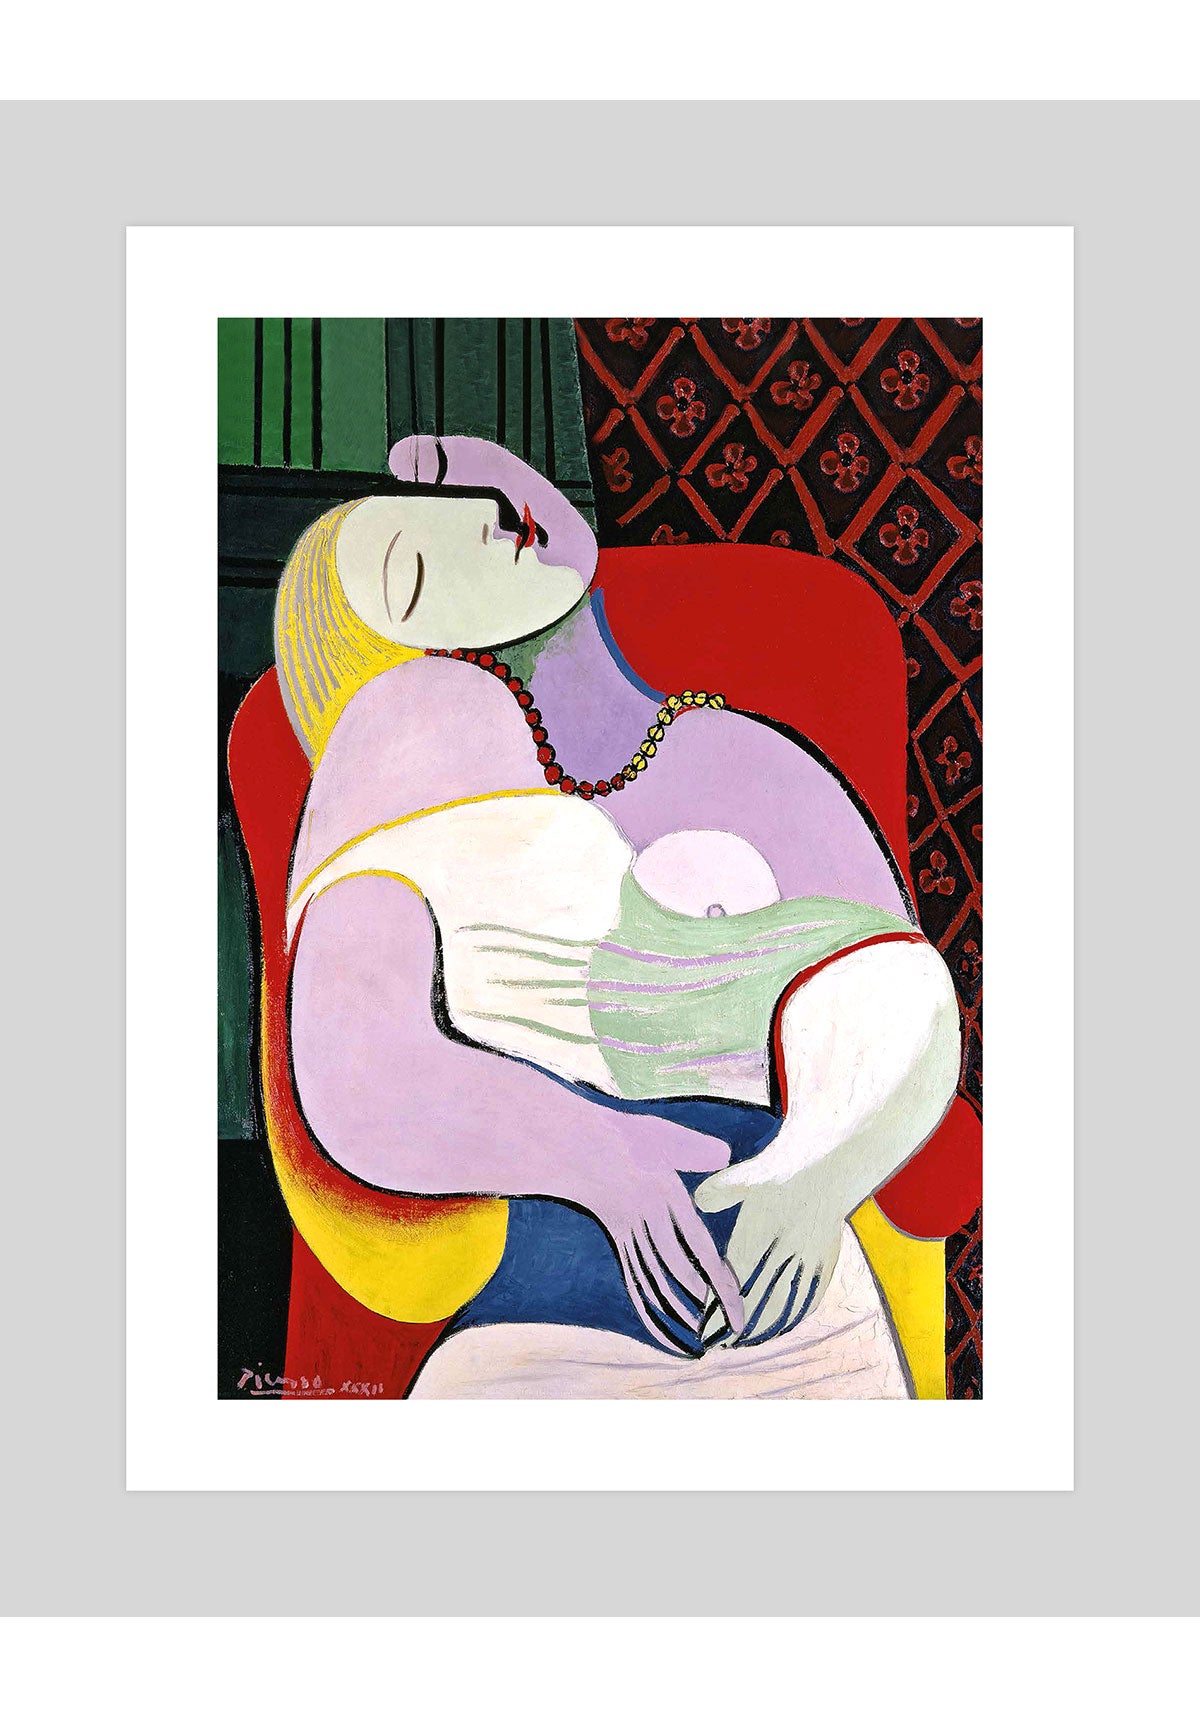 Le Rêve (Picasso) - Wikipedia